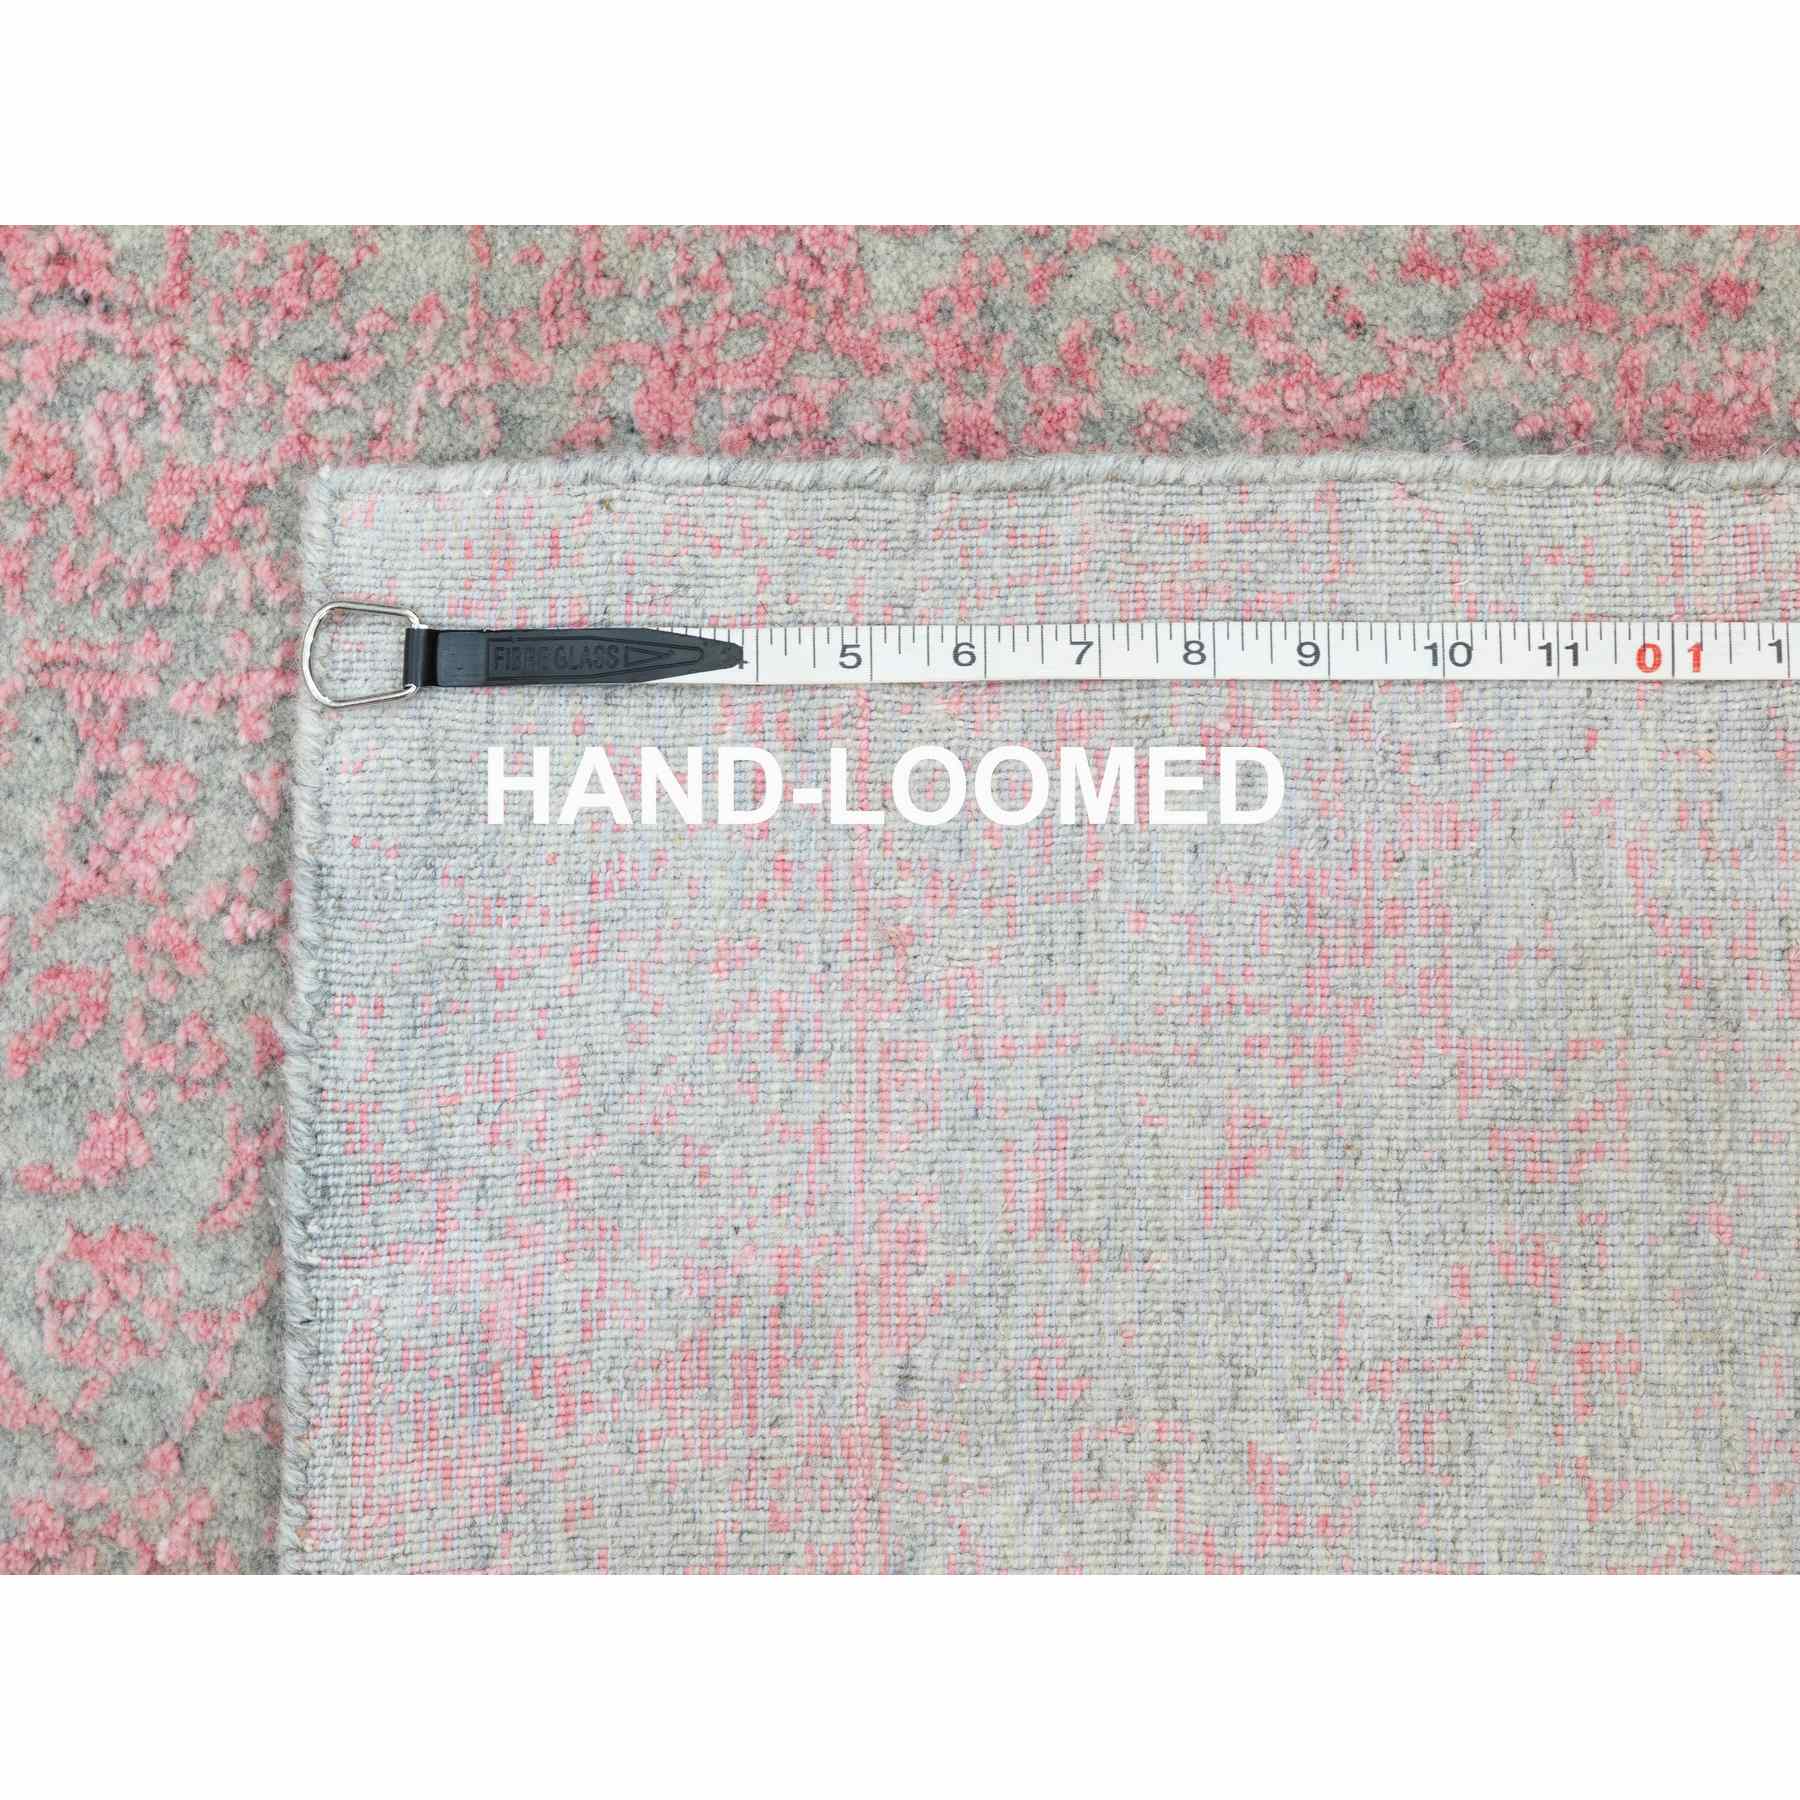 Hand-Loomed-Hand-Loomed-Rug-292930